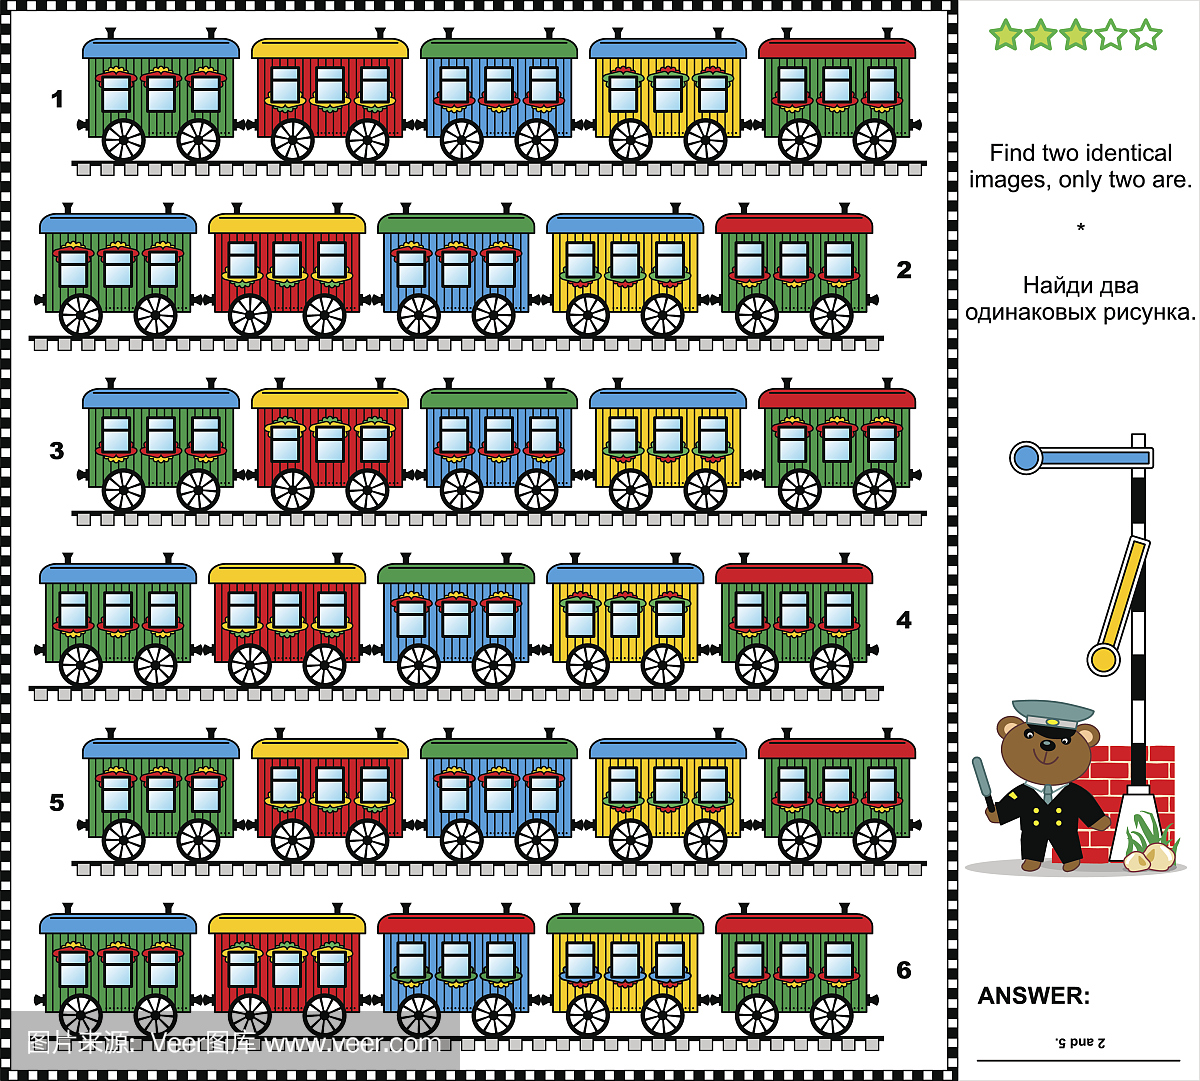 视觉谜语 - 找到两条相同的火车